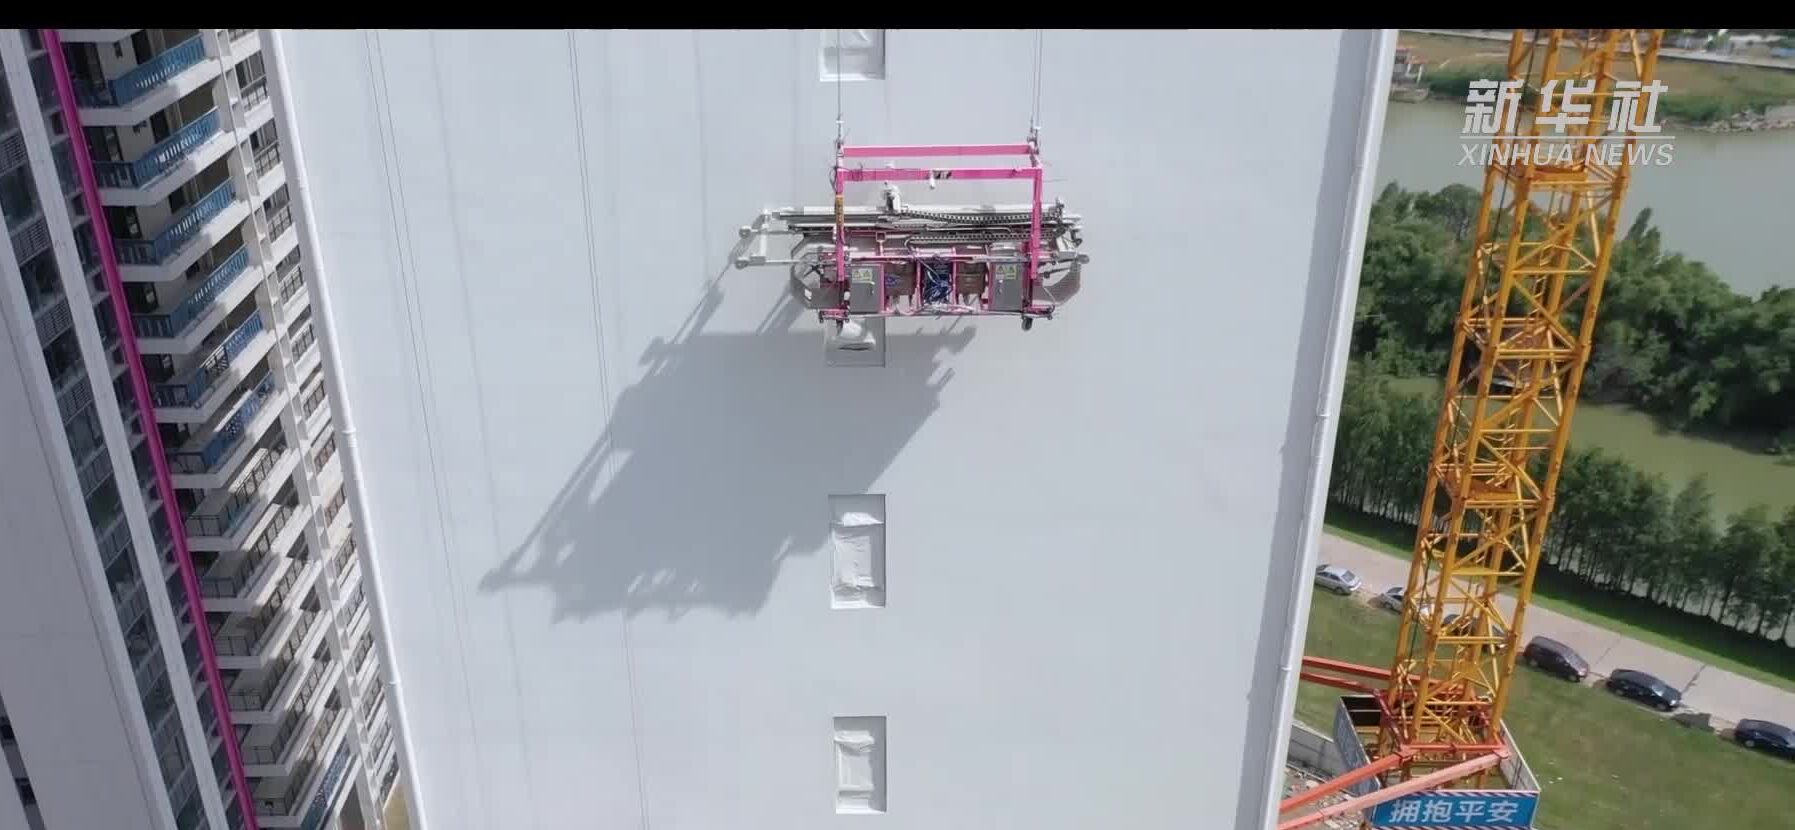 ไฮเทค! กวางตุ้งใช้ 'หุ่นยนต์' ช่วยงานก่อสร้าง วัดขนาด-ปรับพื้น-ขัดเงา